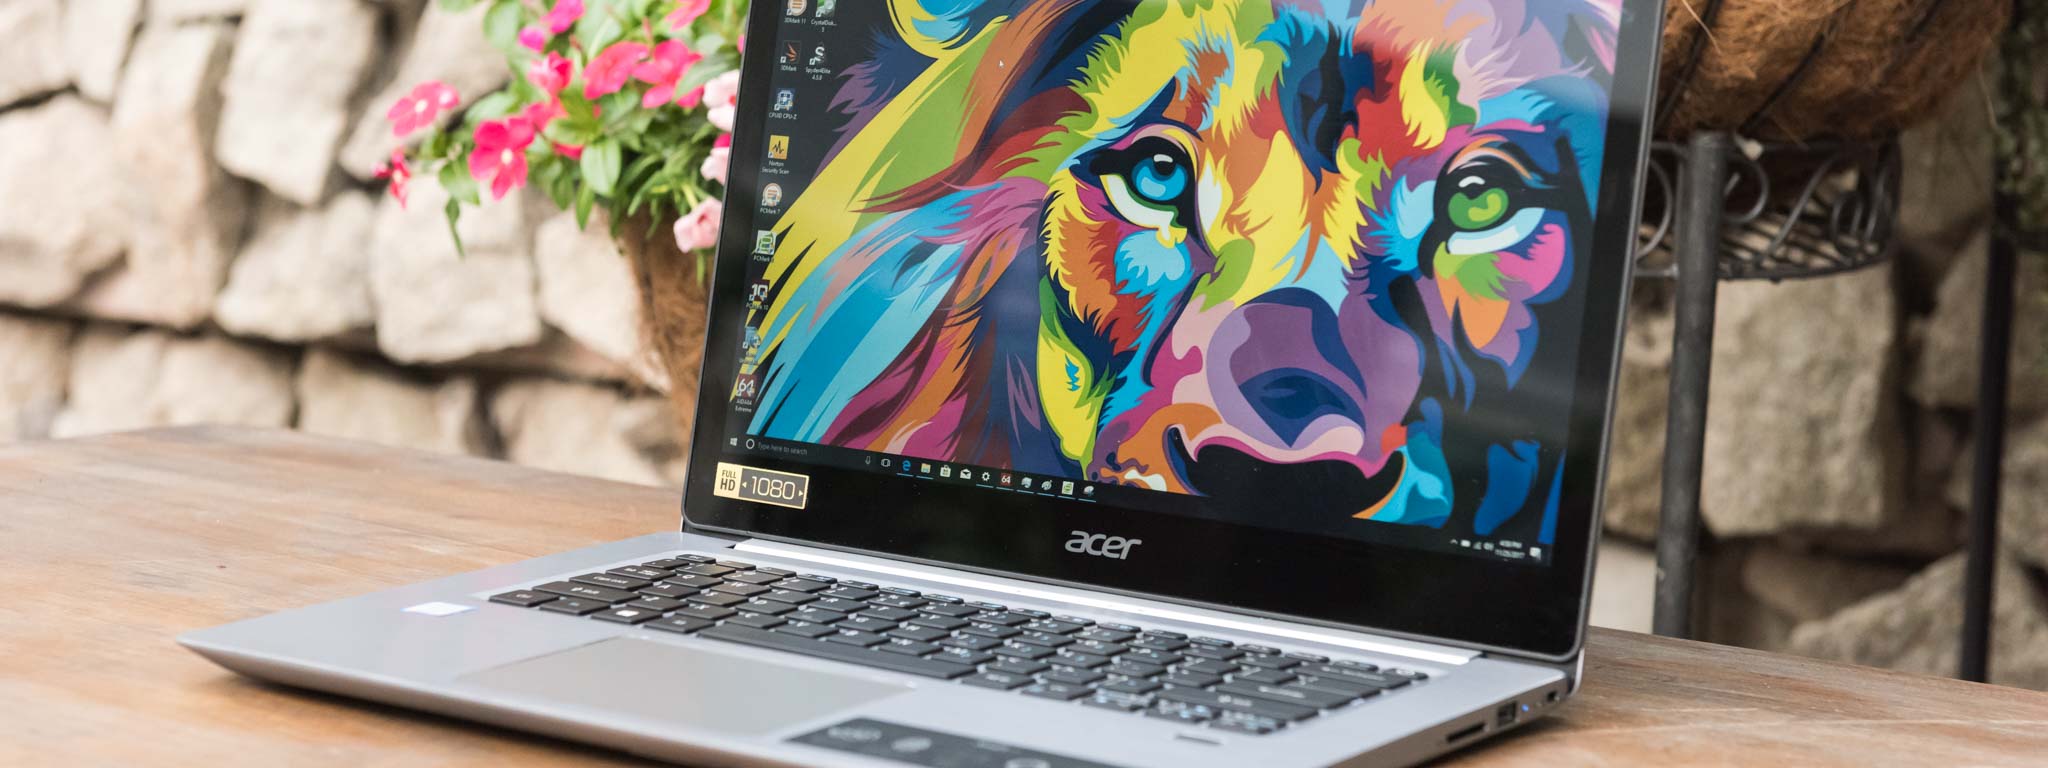 Đánh giá Acer Swift 3 – laptop đầu tiên được Acer dùng vi xử lý Kaby Lake Refresh [HOT]